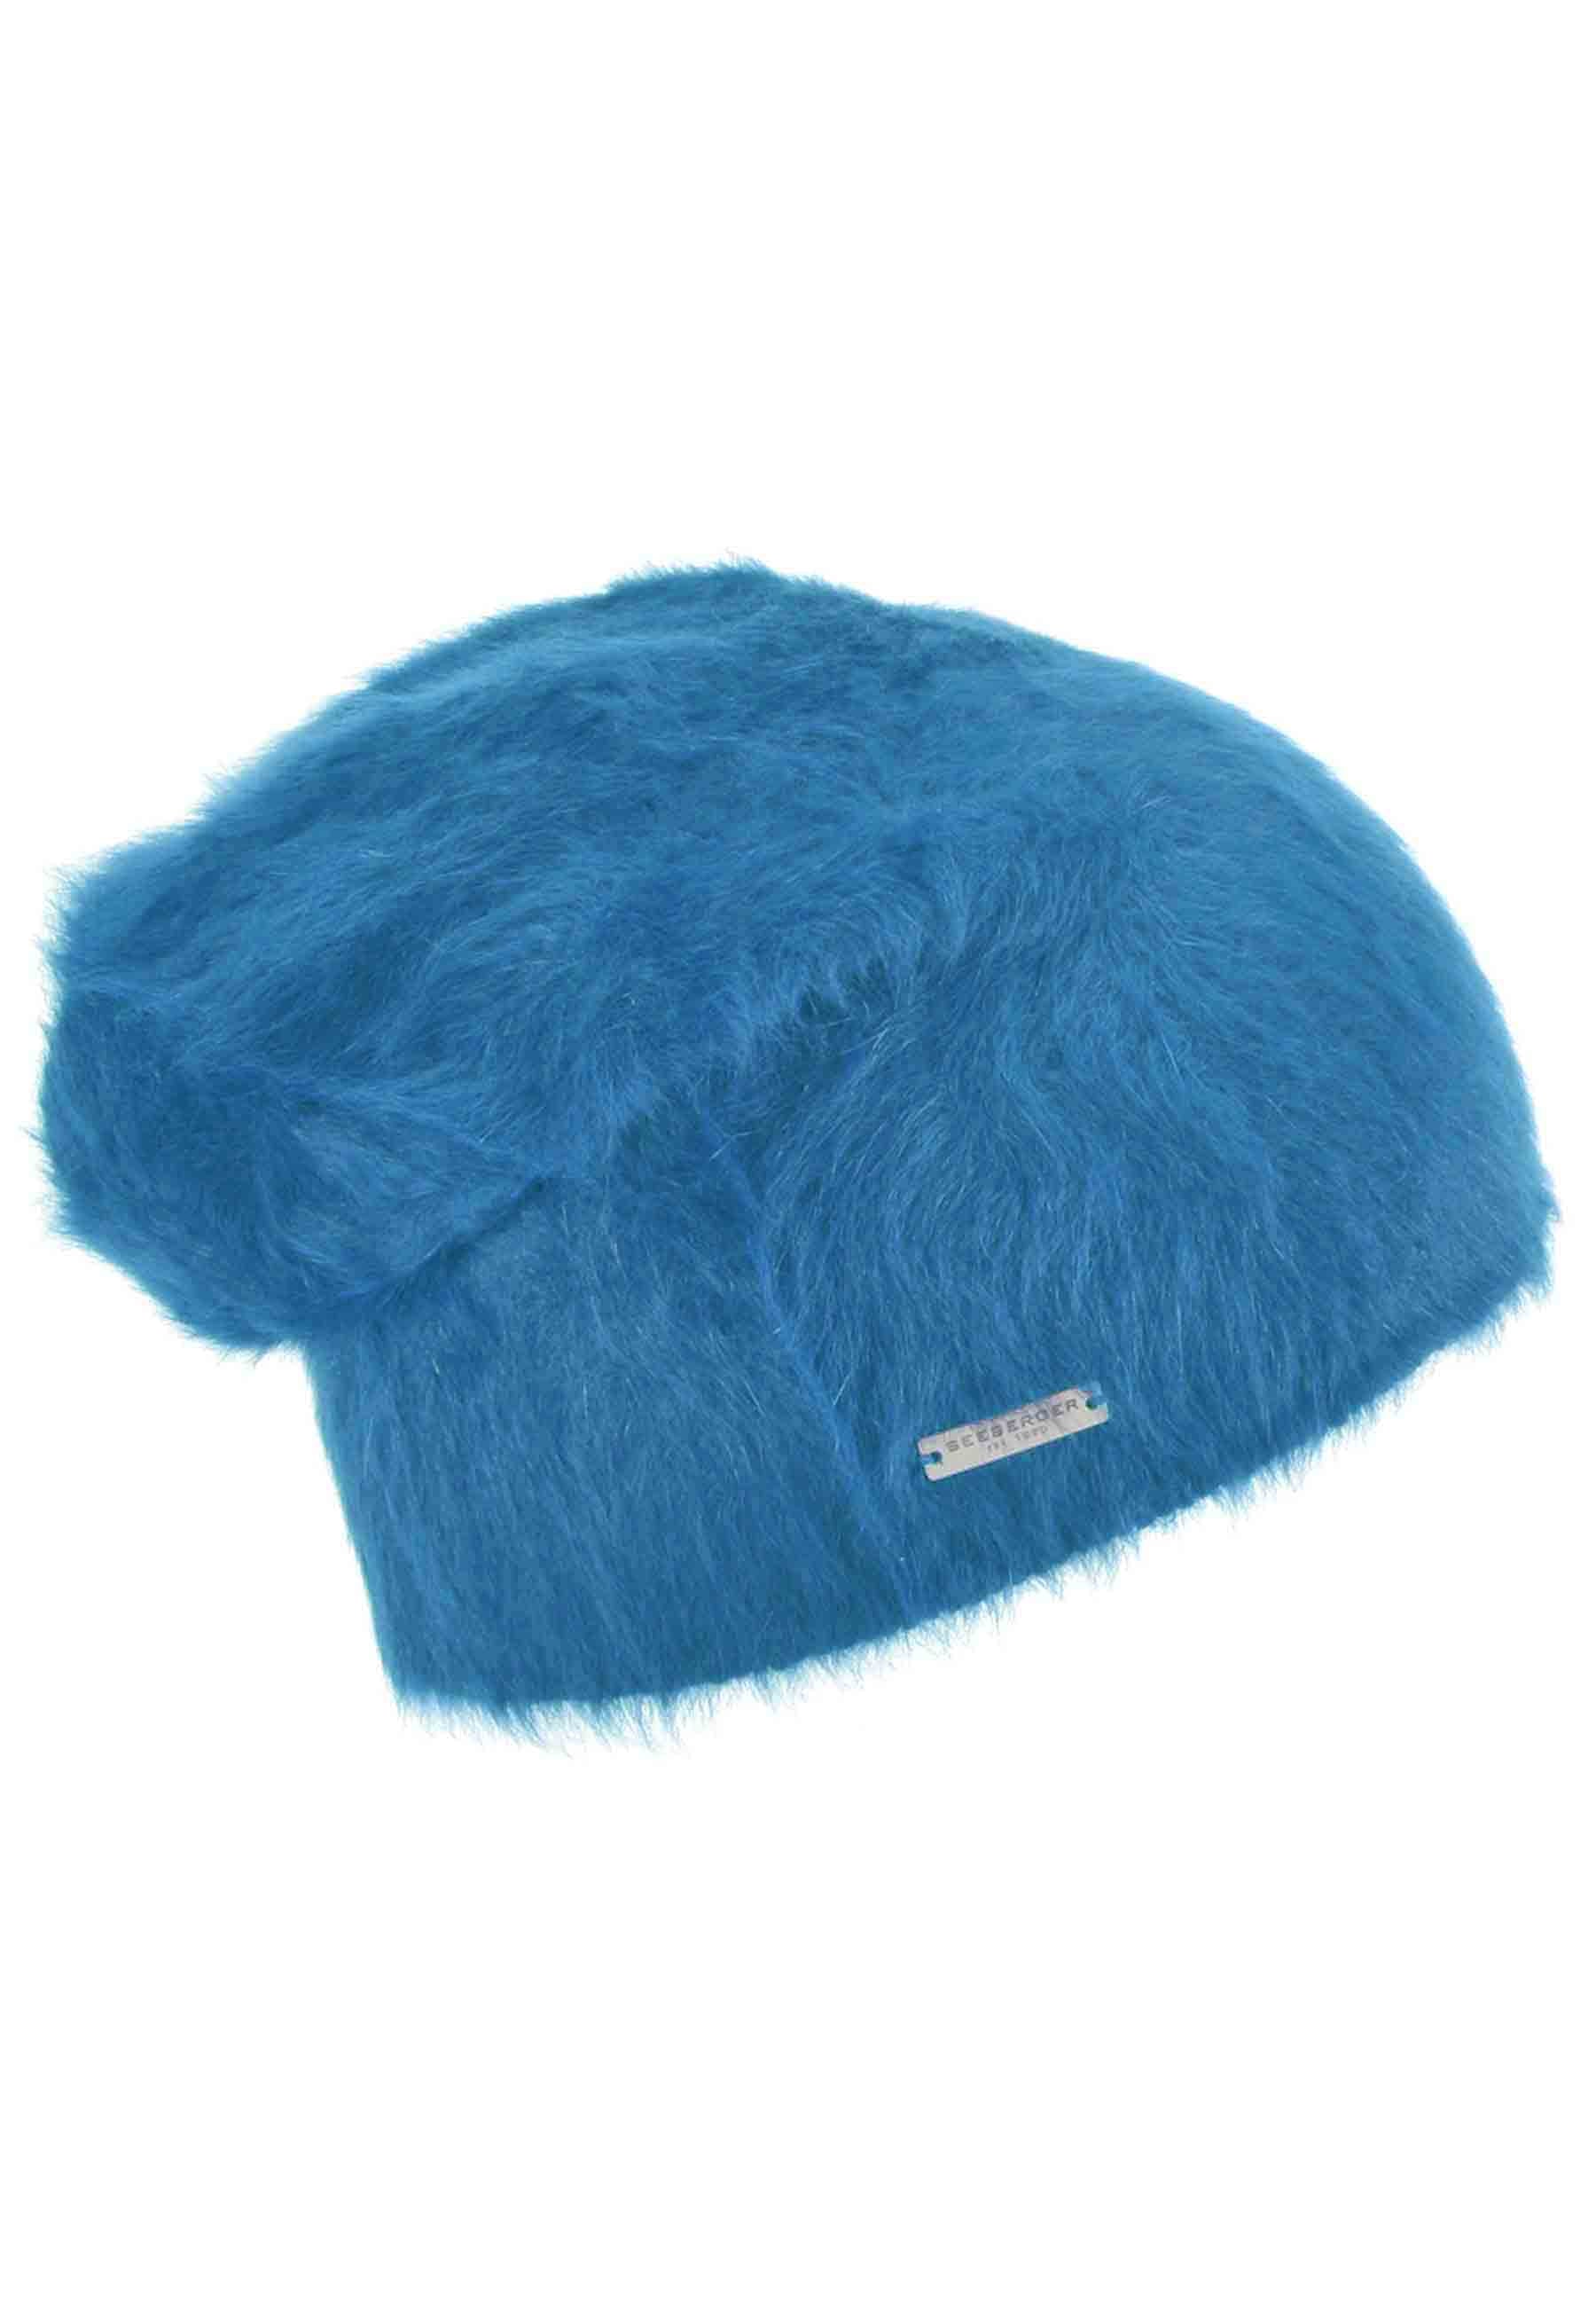 Bonnet en laine angora bleu clair